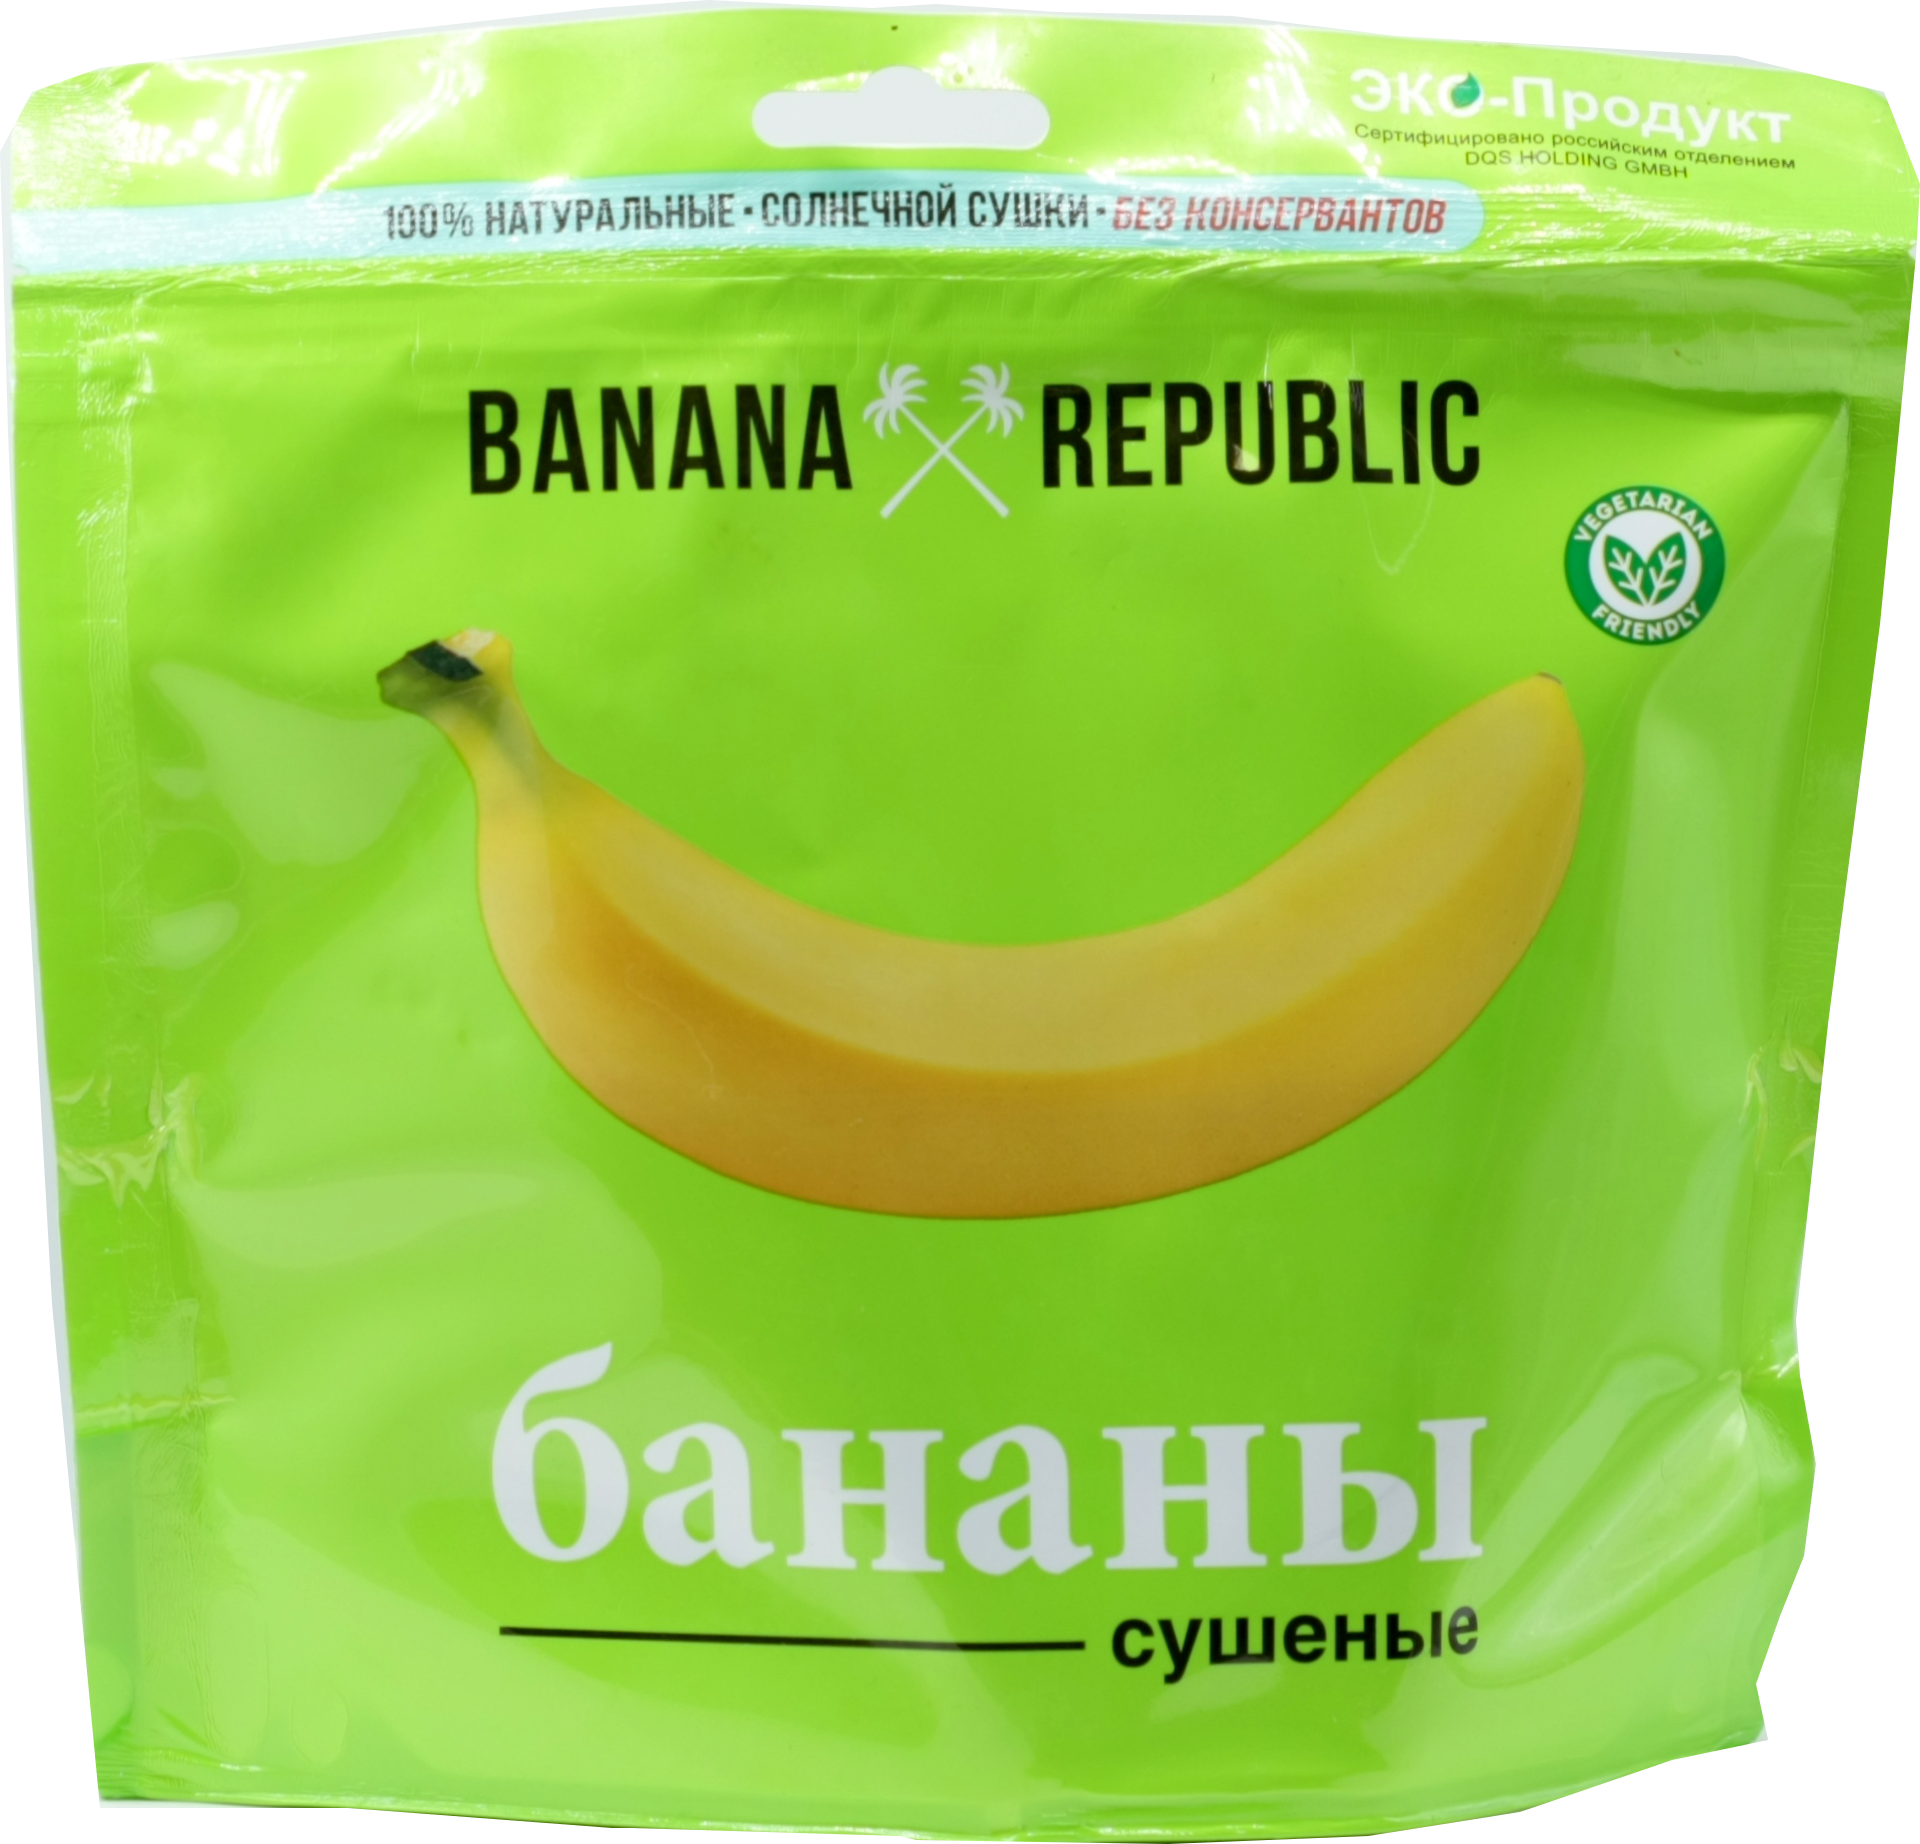 Бананы сушеные 200гр. Сухие бананы. Banana Republic сушеные бананы. Сушеные бананы в упаковке.